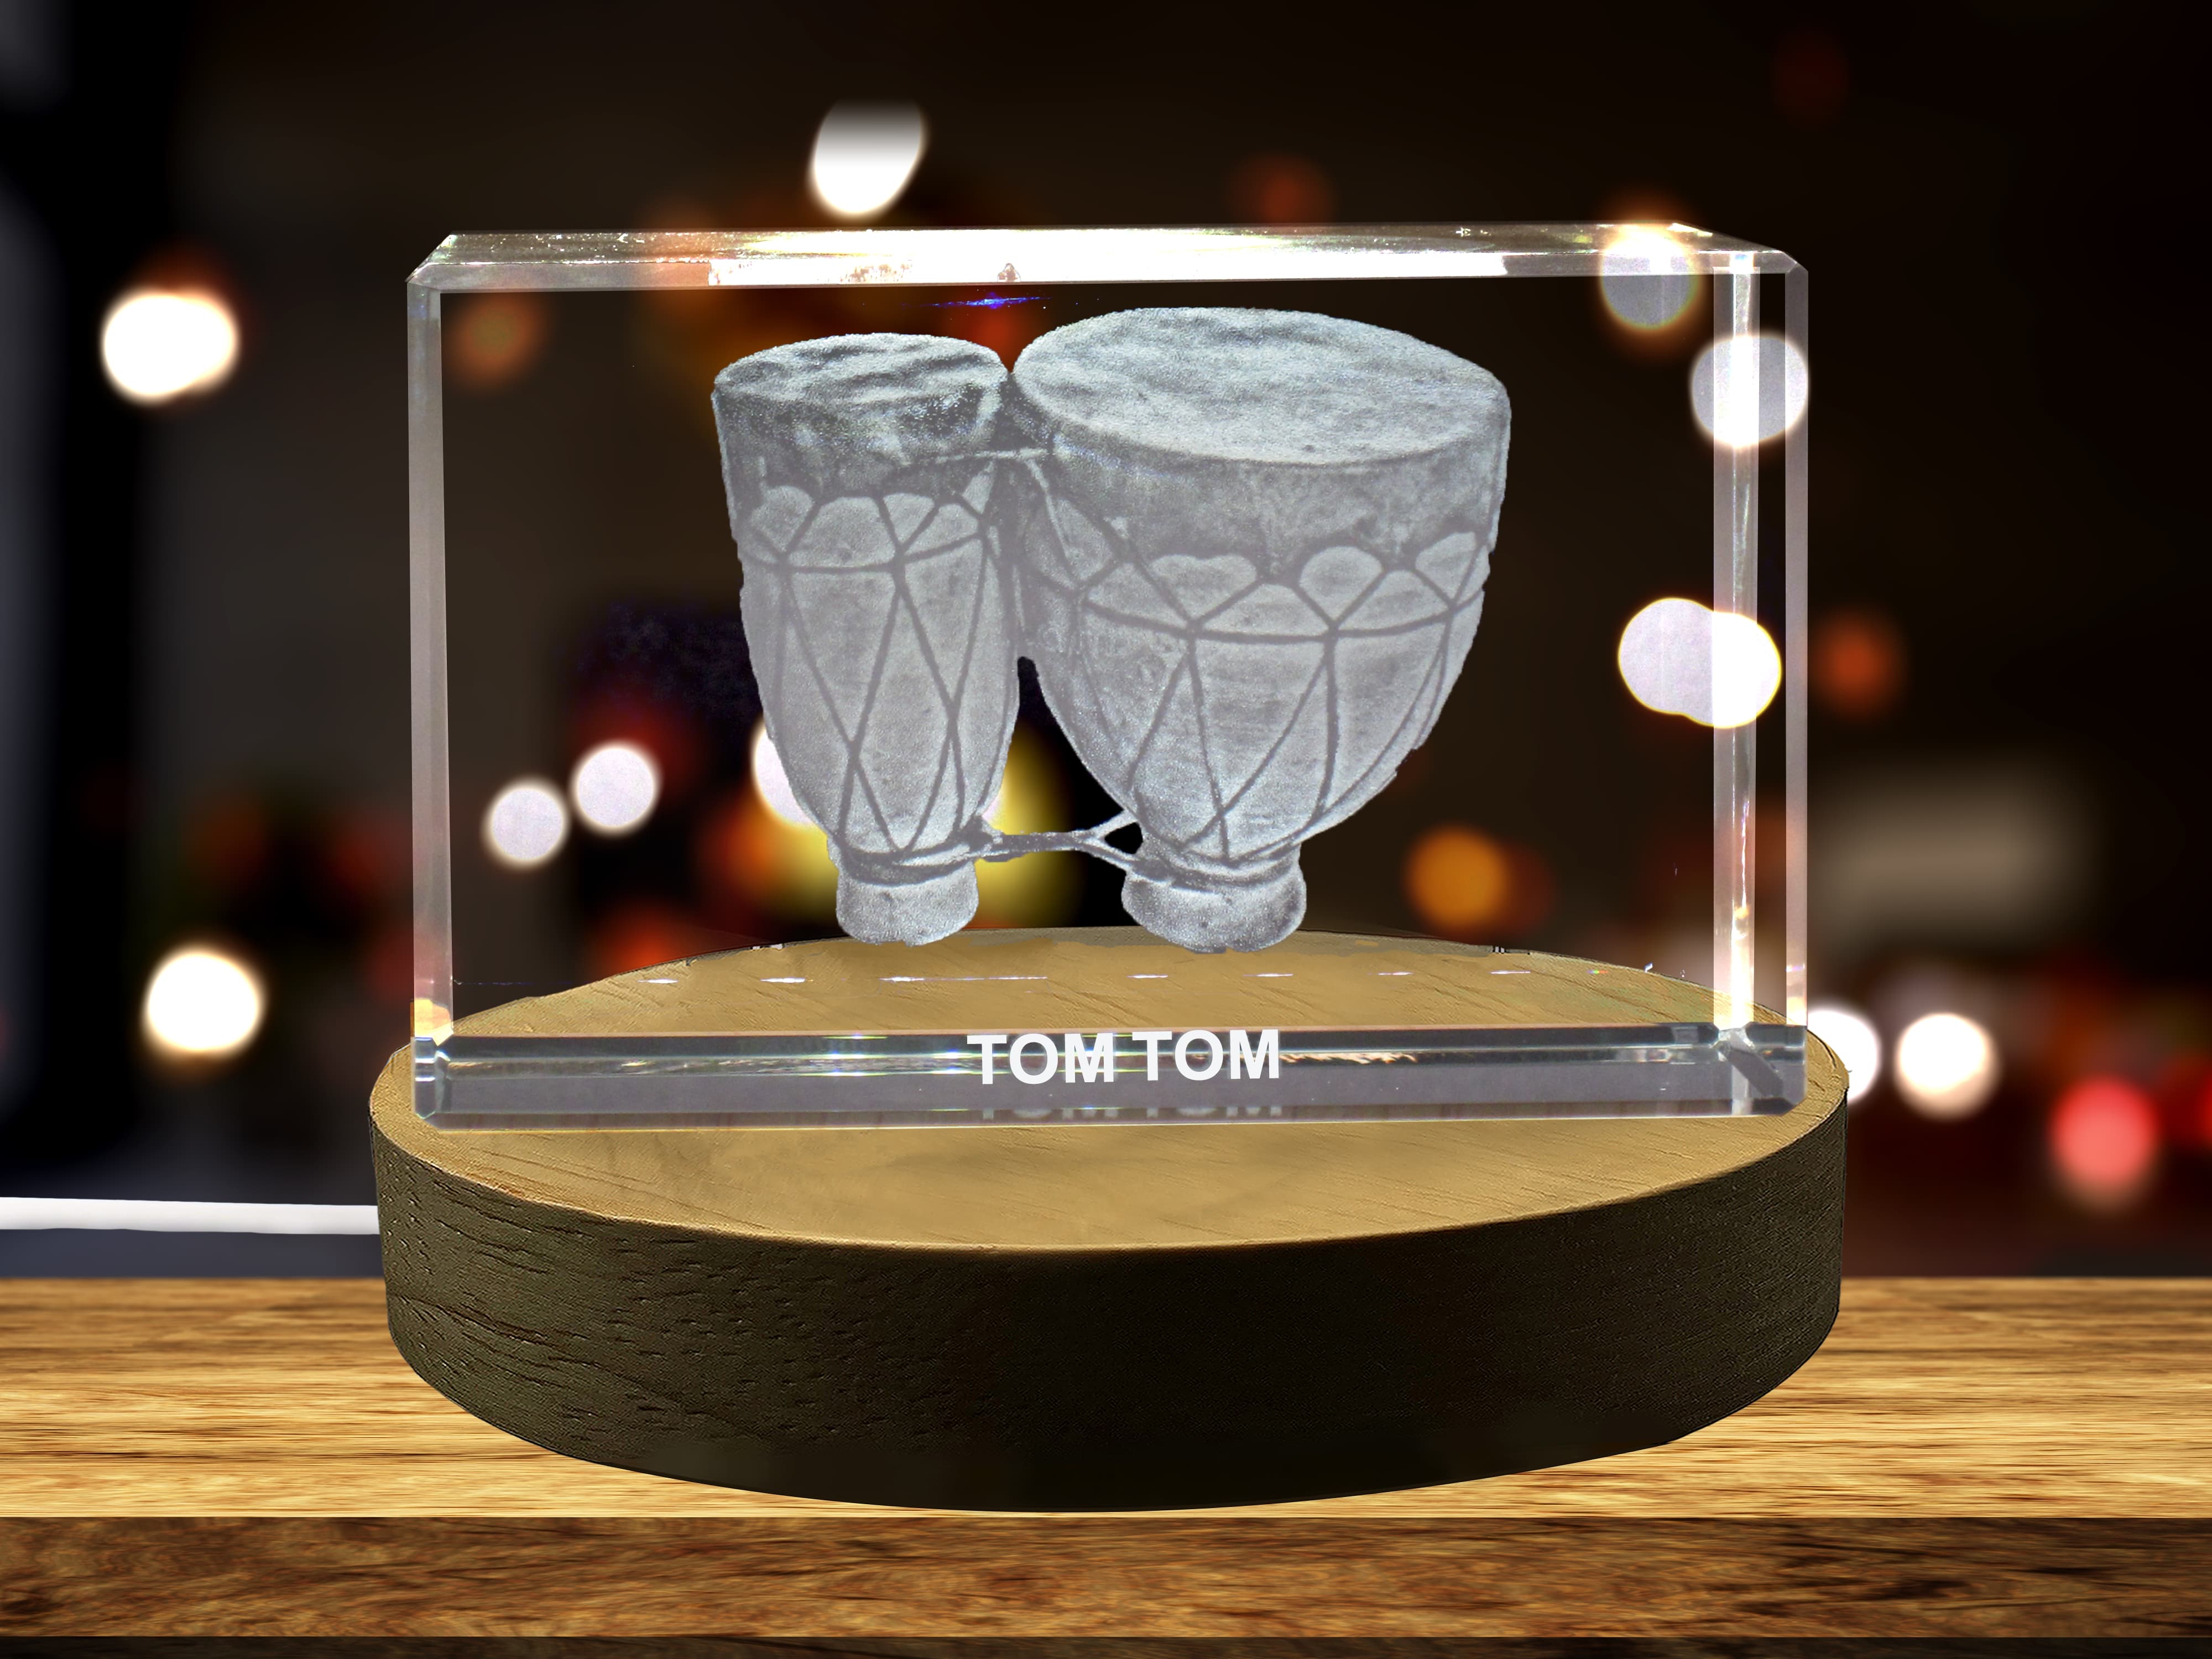 Tom Tom 3D Engraved Crystal 3D Engraved Crystal Keepsake/Gift/Decor/Collectible/Souvenir A&B Crystal Collection